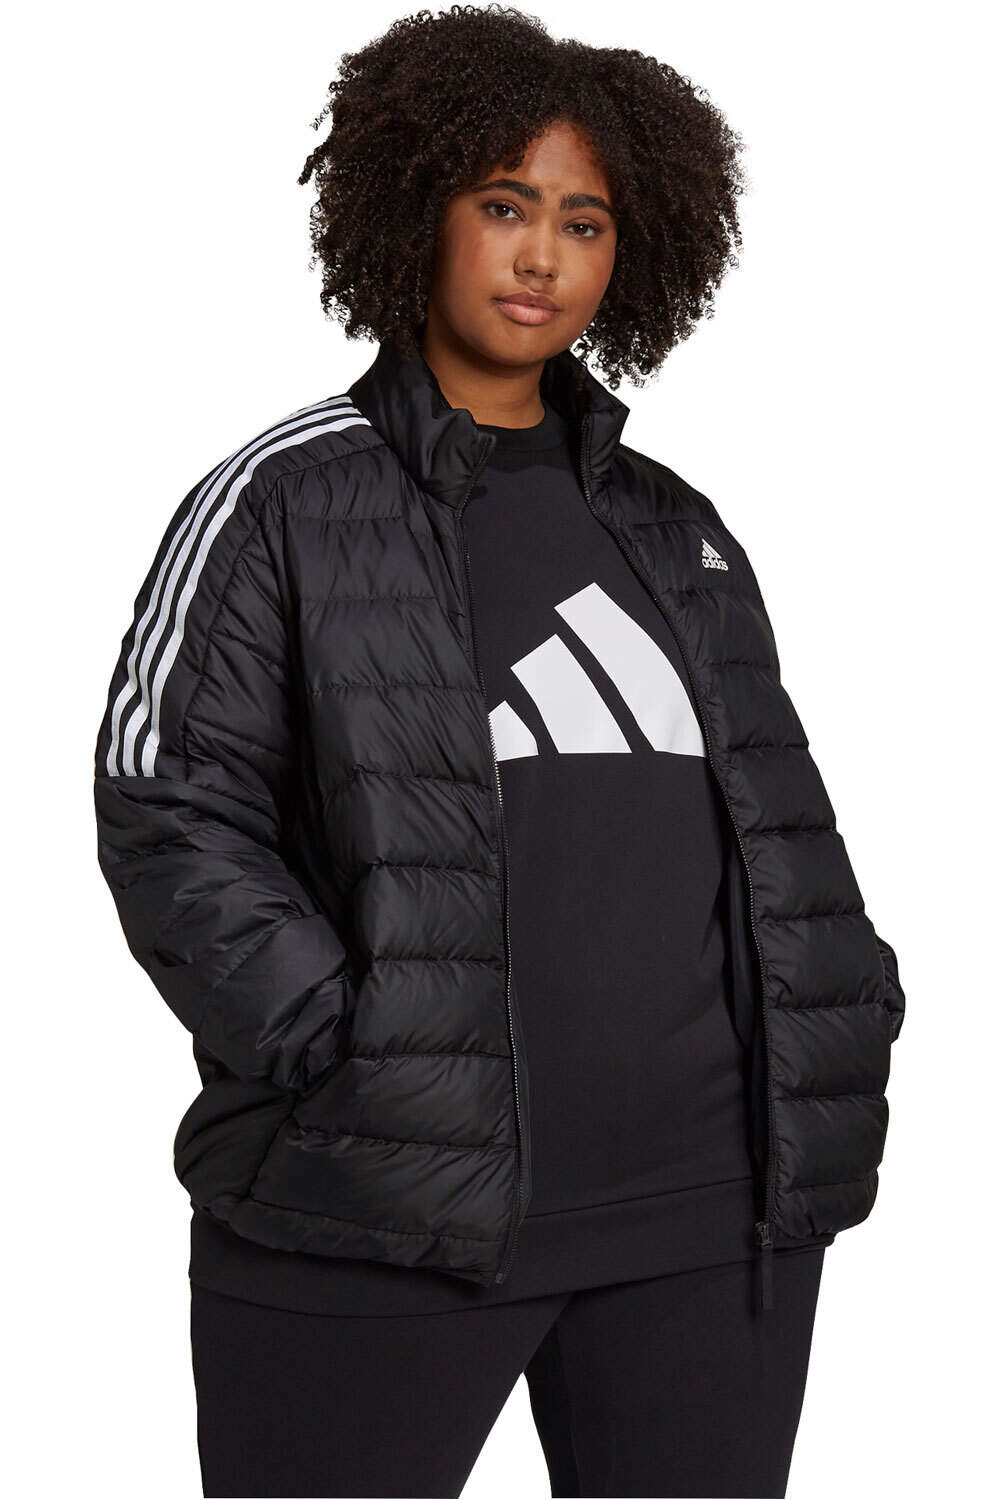 adidas chaqueta outdoor mujer Essentials Light (Tallas grandes) vista frontal